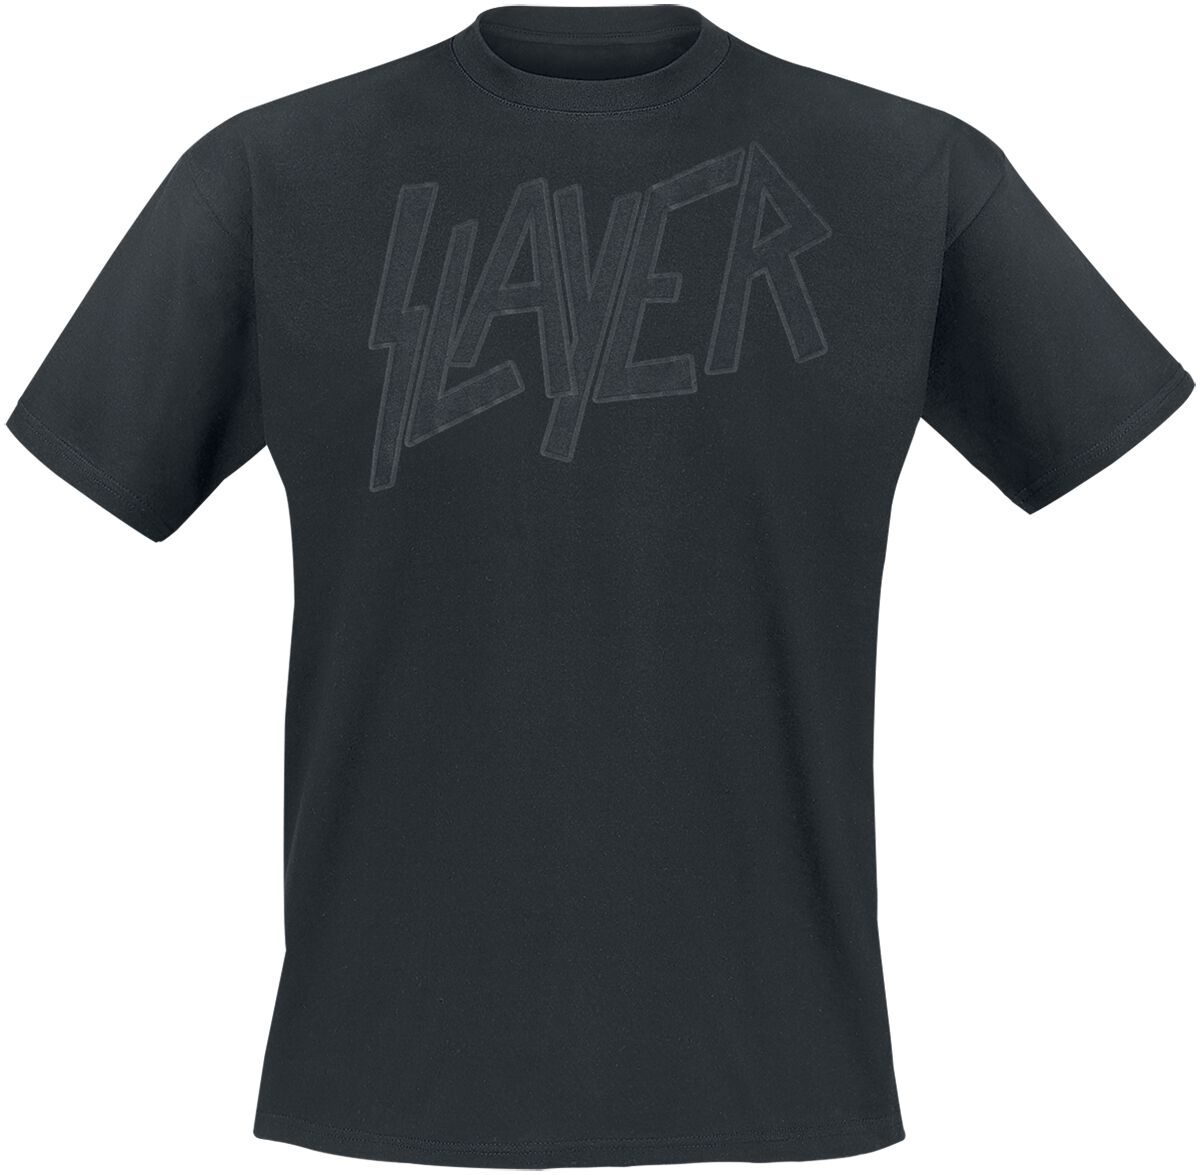 Slayer T-Shirt - Black On Black Logo - S bis M - für Männer - Größe M - schwarz  - Lizenziertes Merchandise!